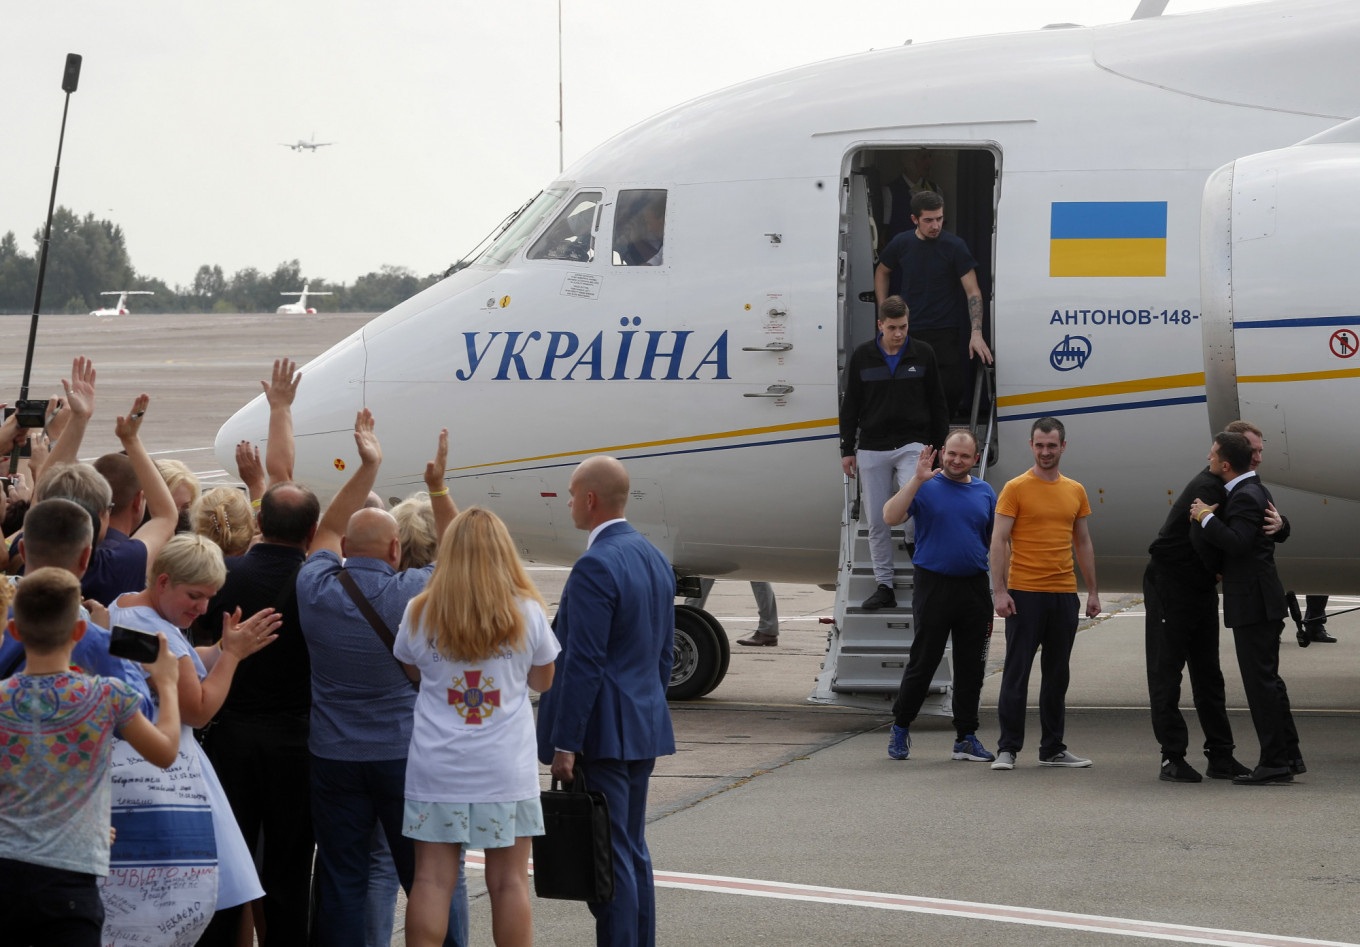 Russia, Ukraine Reach 2nd Prisoner Exchange Deal – RBC